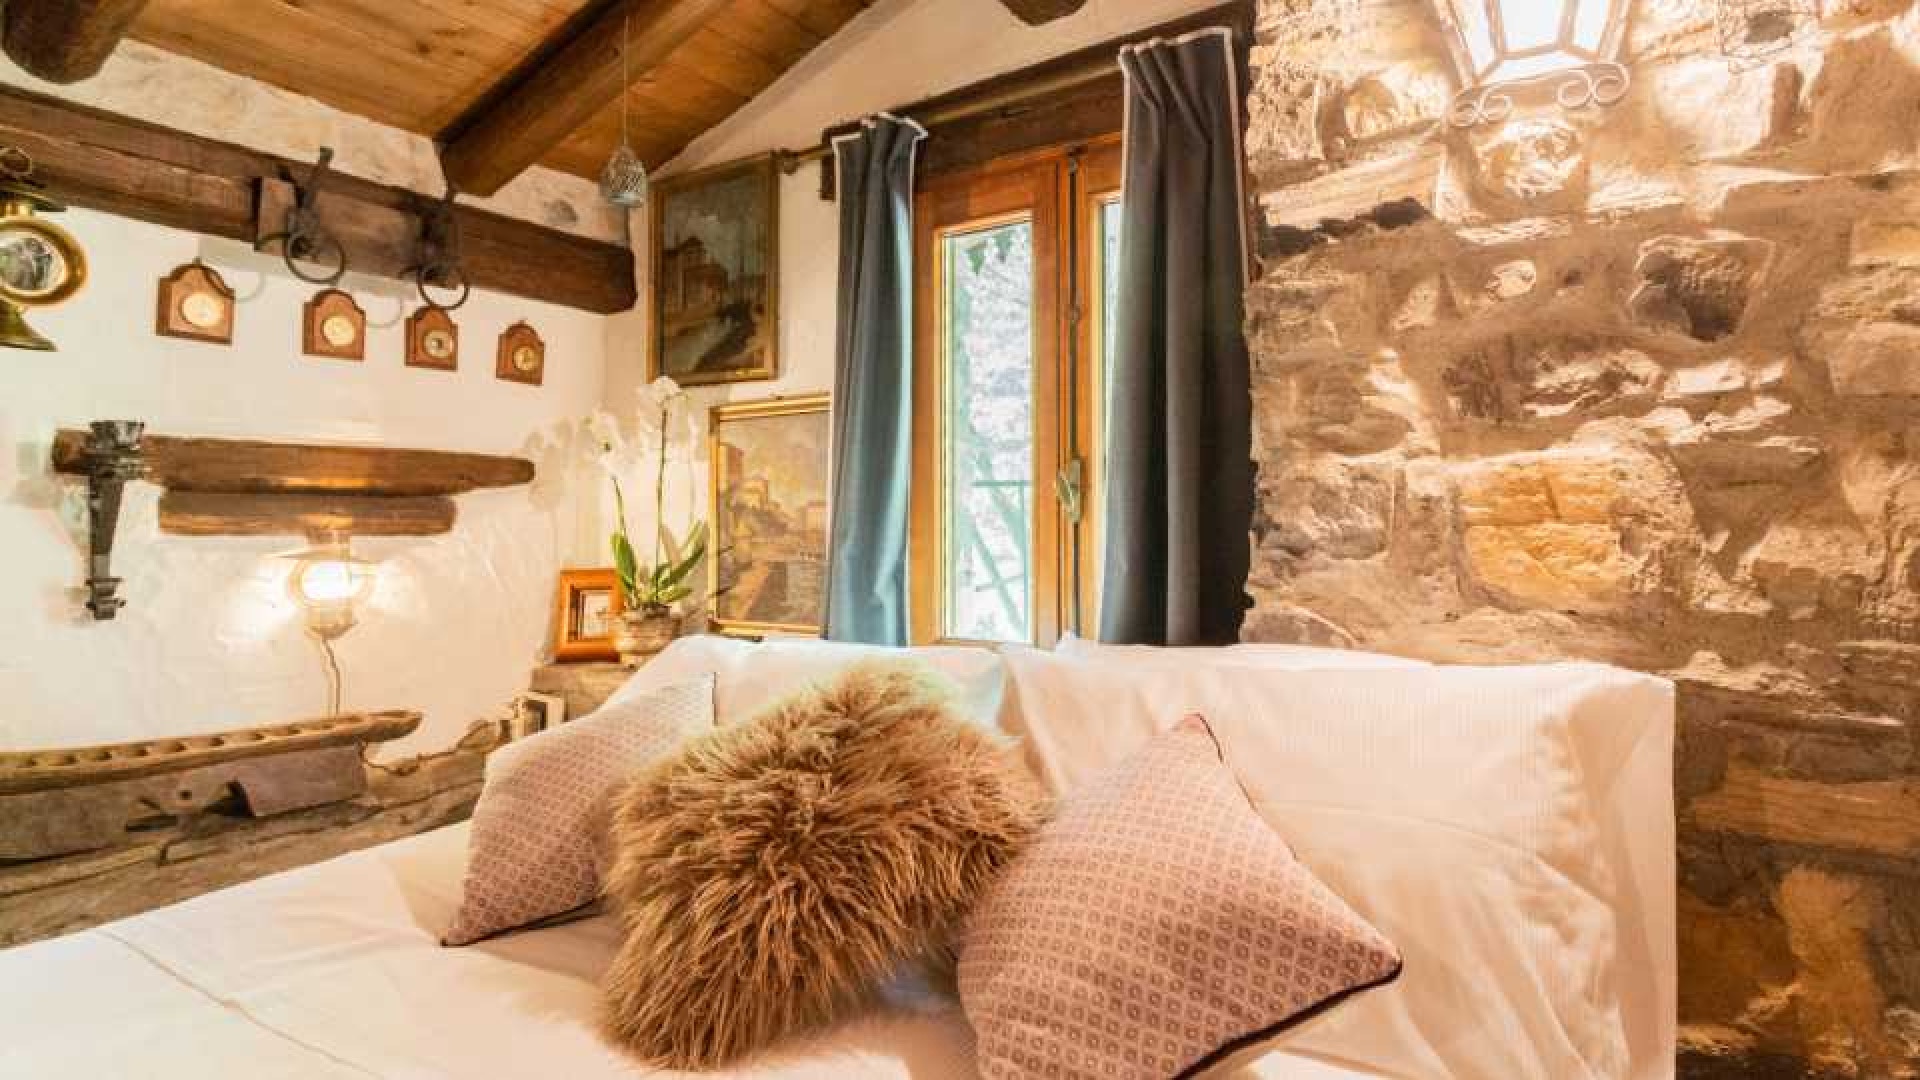 Villa van programma Lago de Beau aan Comomeer te huur. Zie foto's